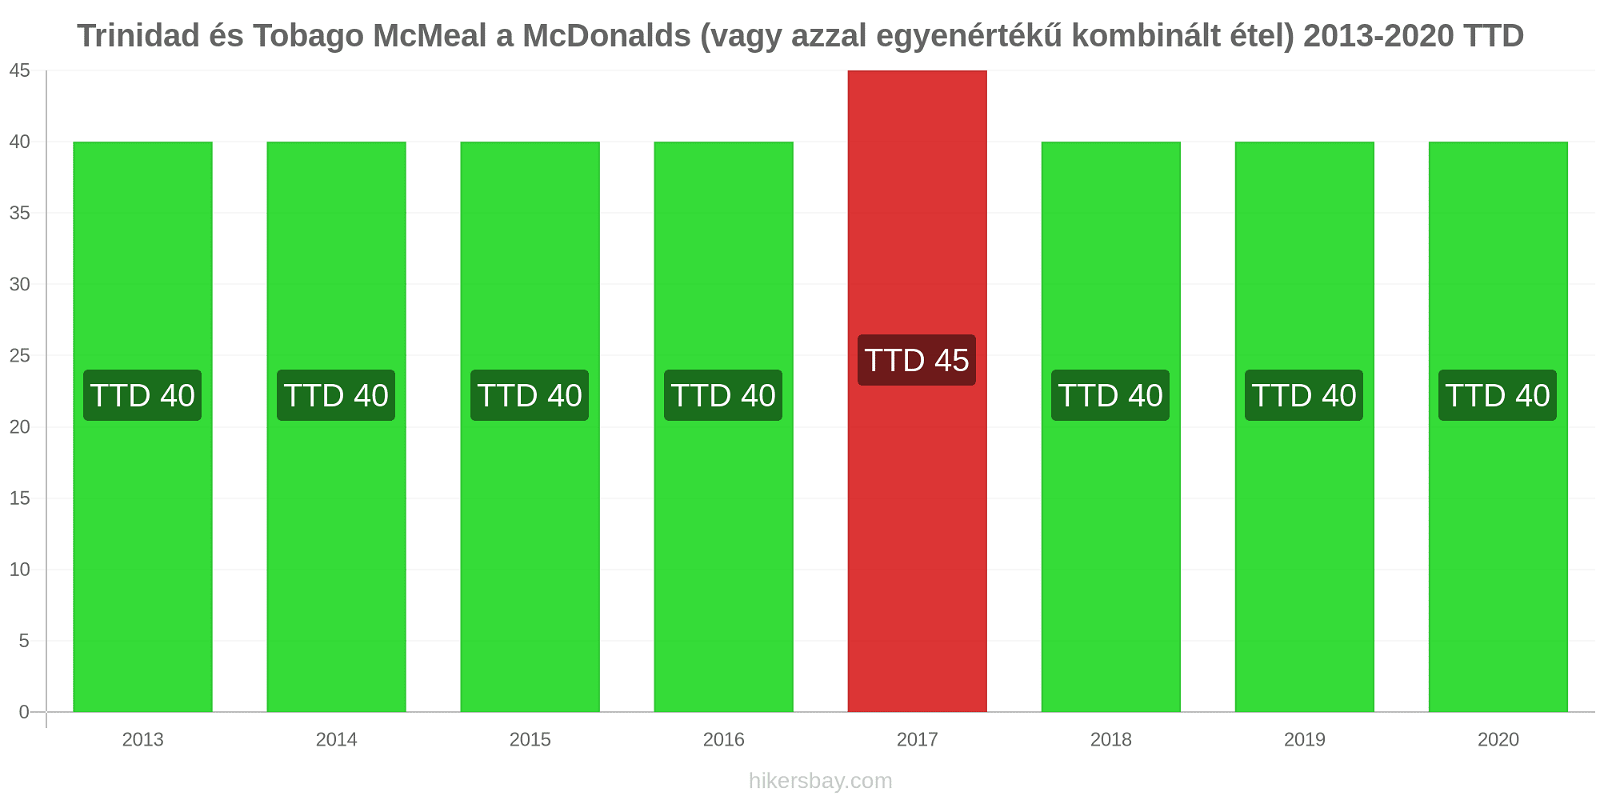 Trinidad és Tobago árváltozások McMeal a McDonalds (vagy azzal egyenértékű kombinált étel) hikersbay.com